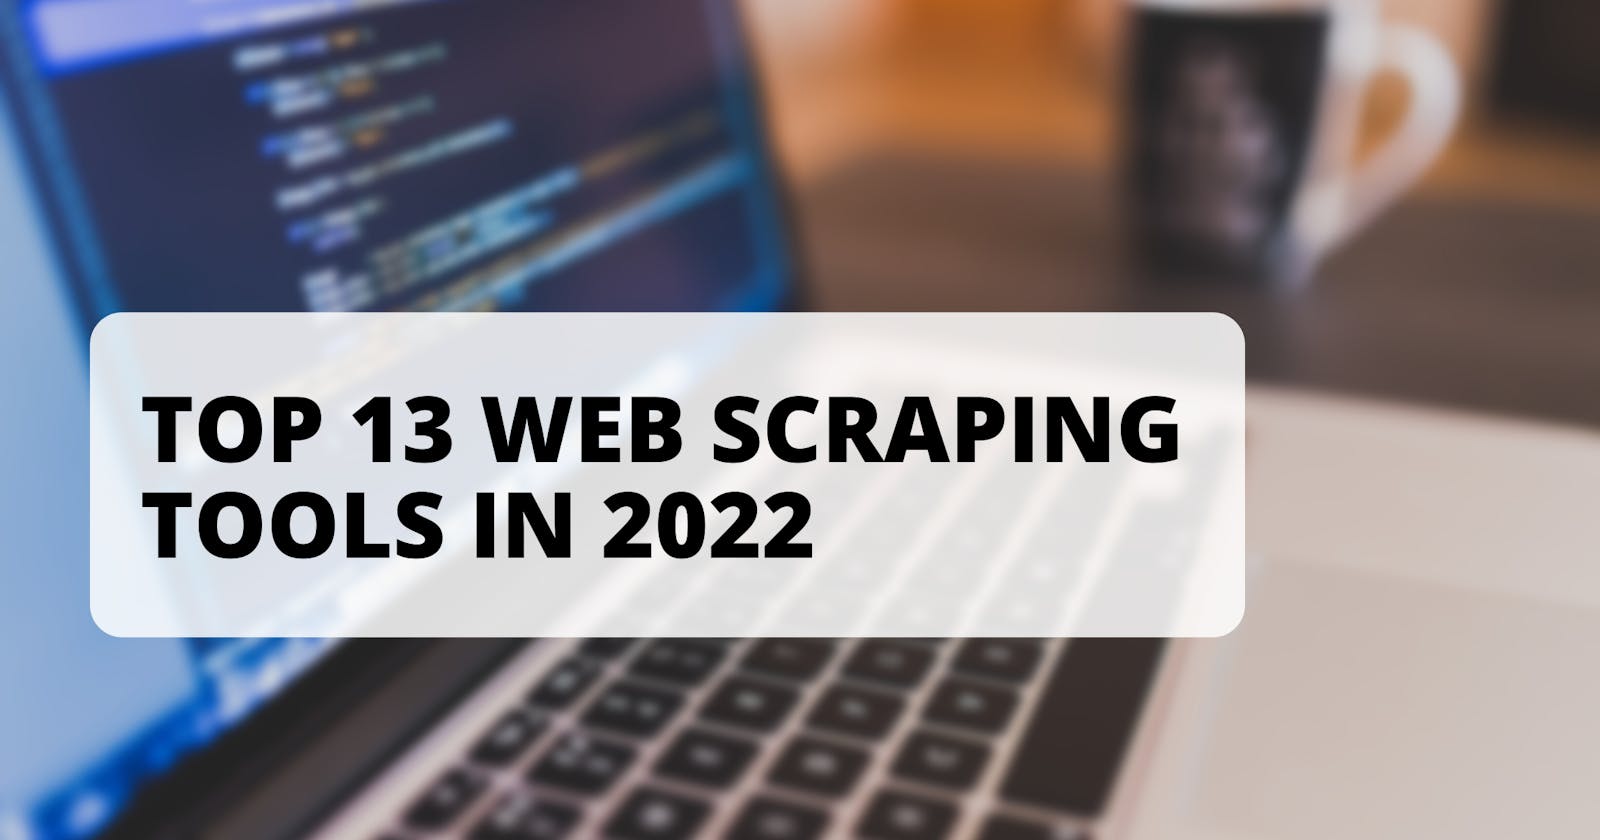 Top 13 Web scraping tools in 2022